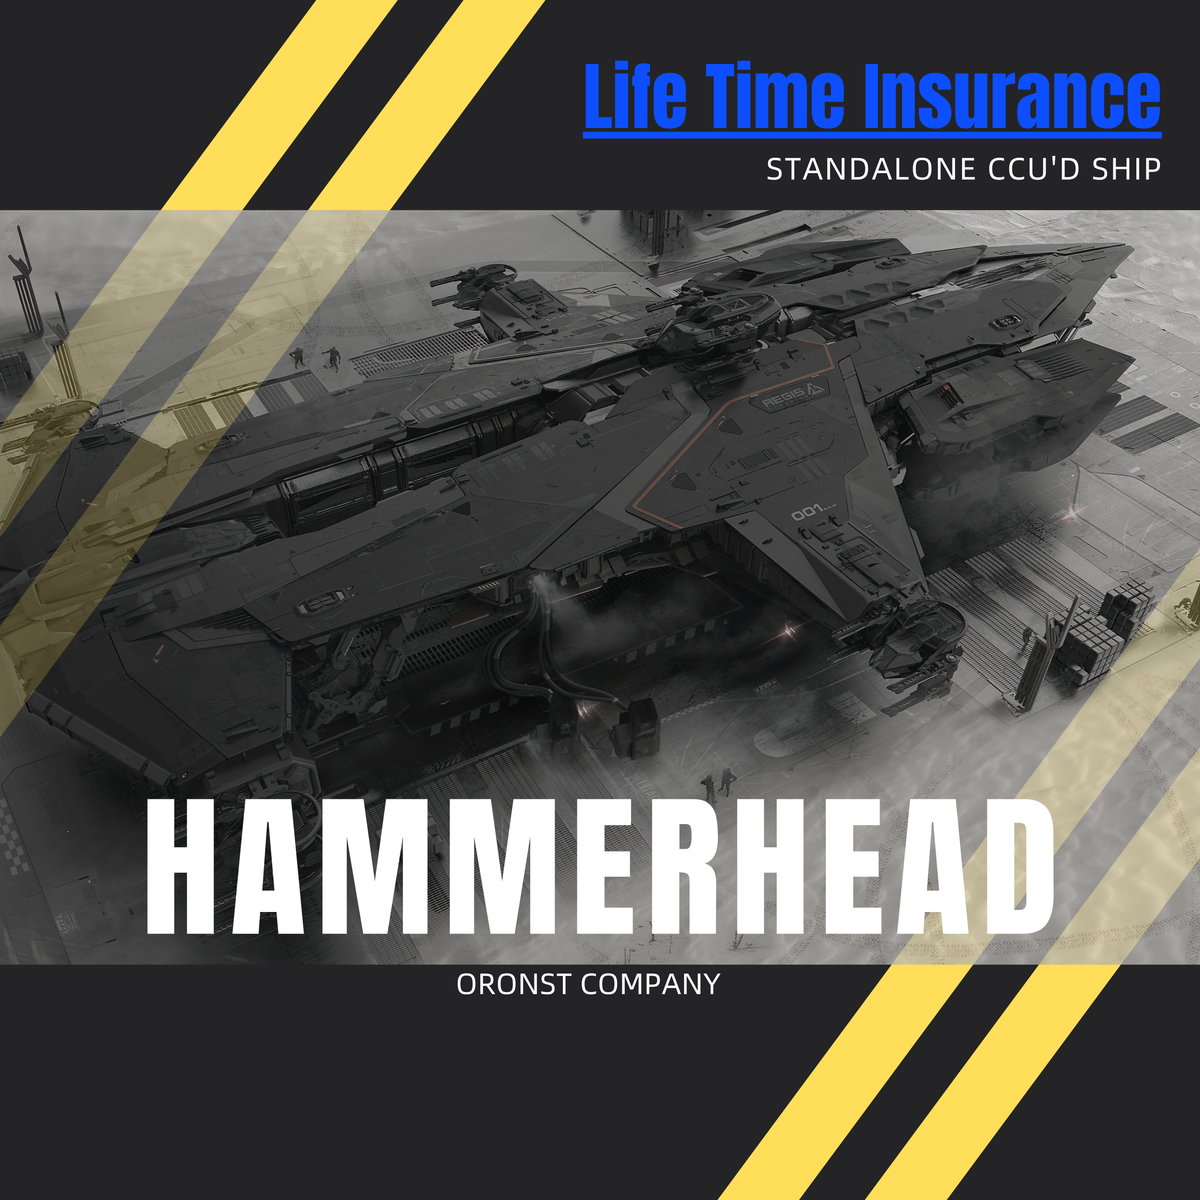 Hammerhead - LTI